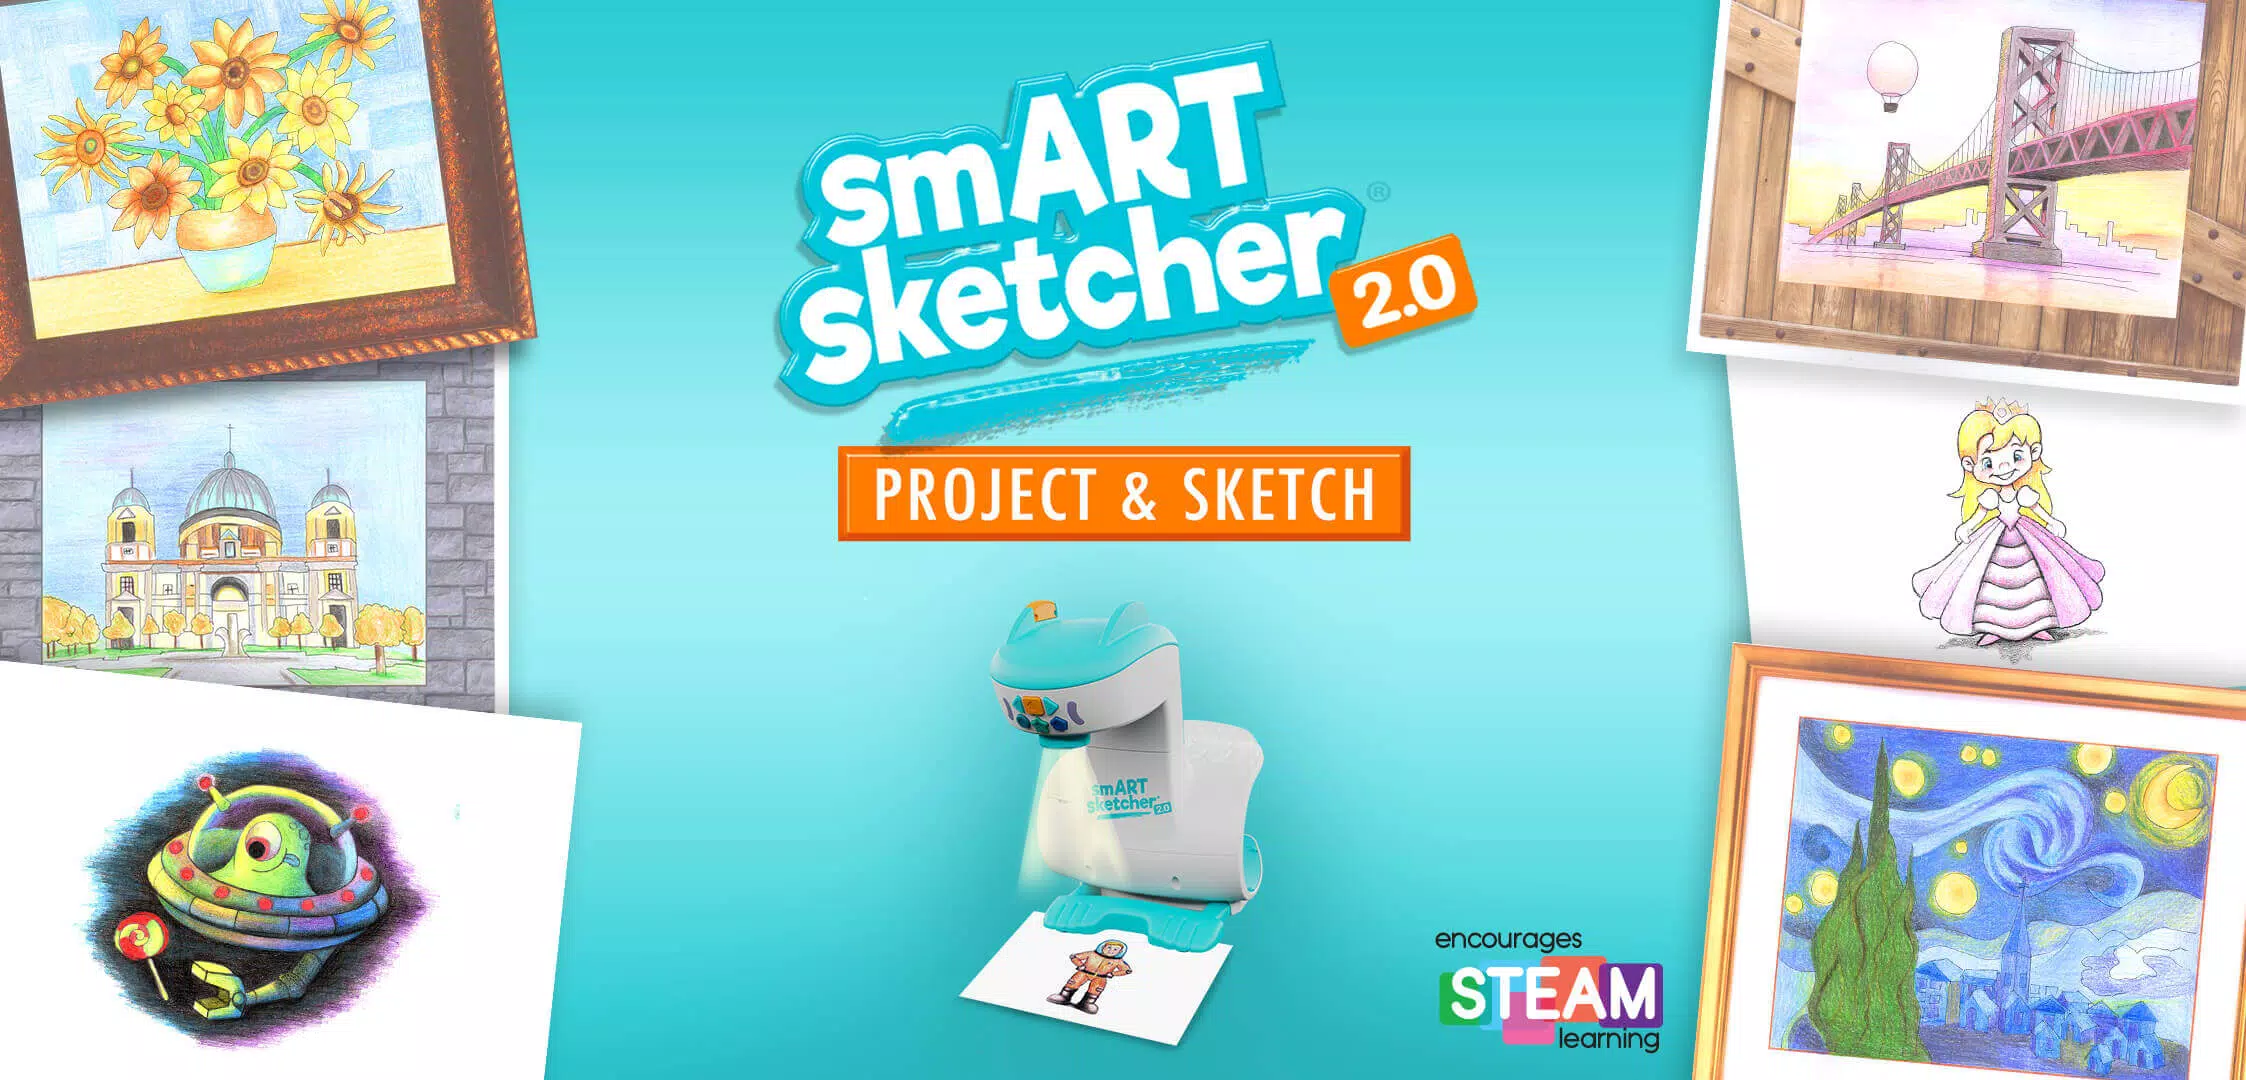 SmART Sketcher Projector 2.0